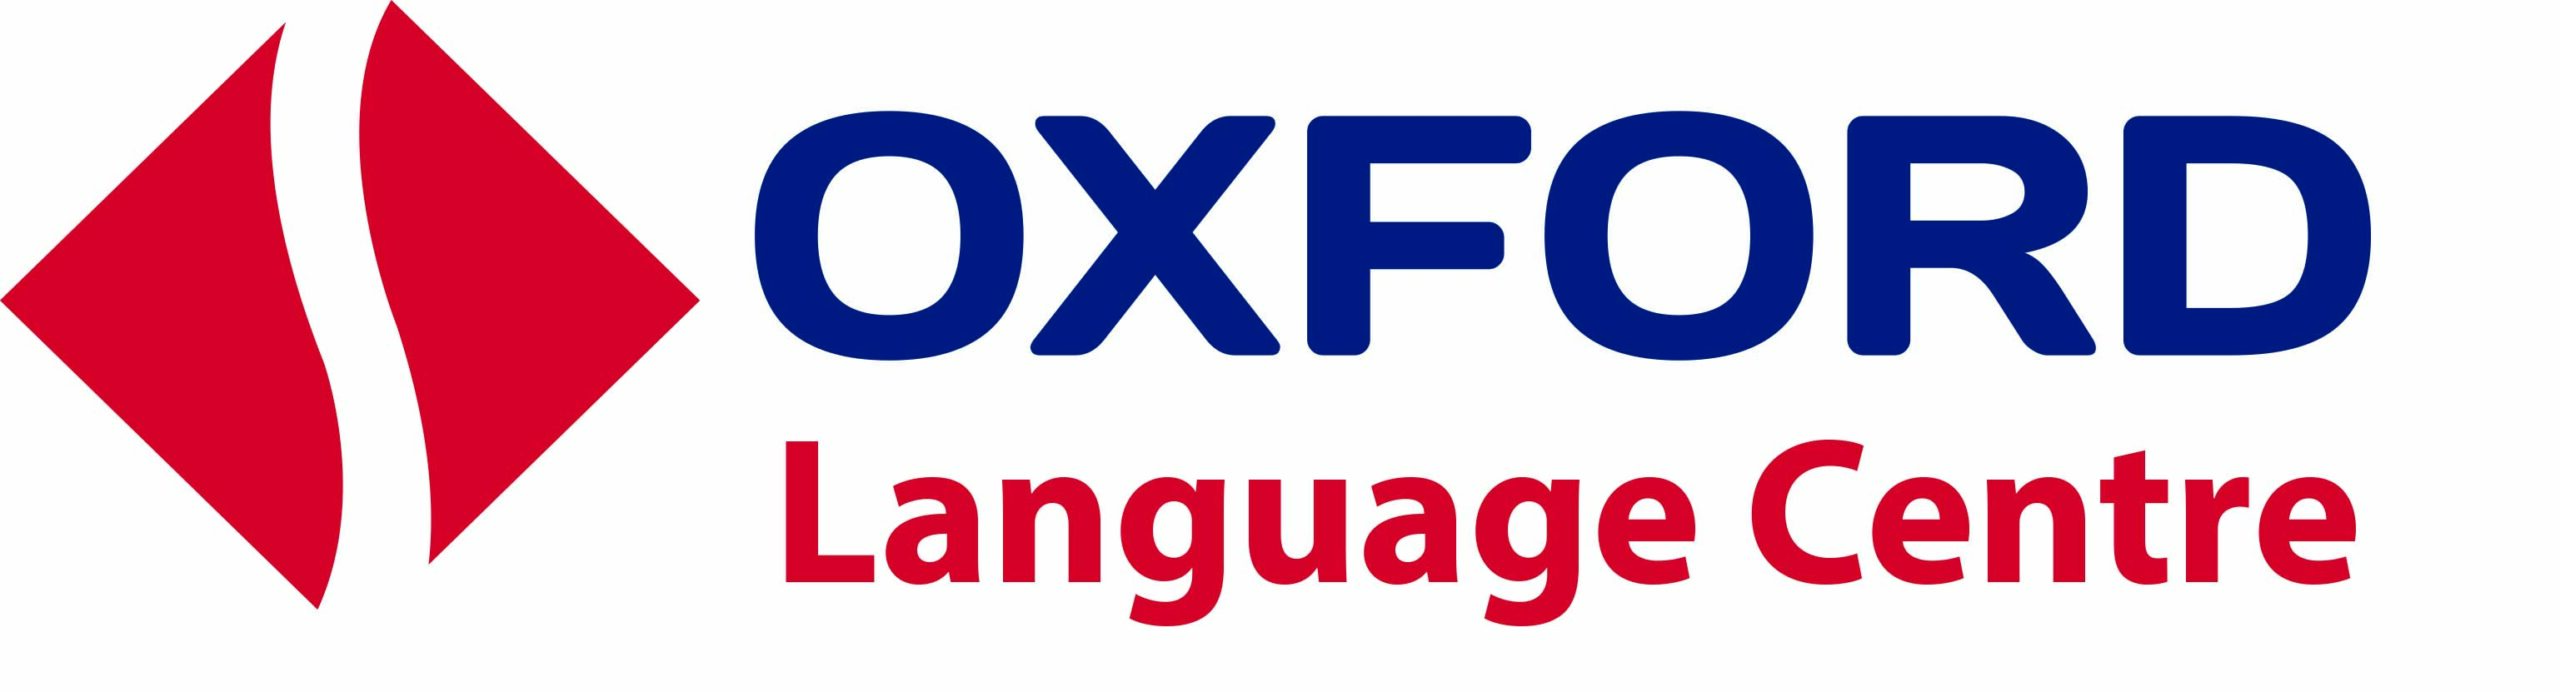 مركز اكسفورد للغات